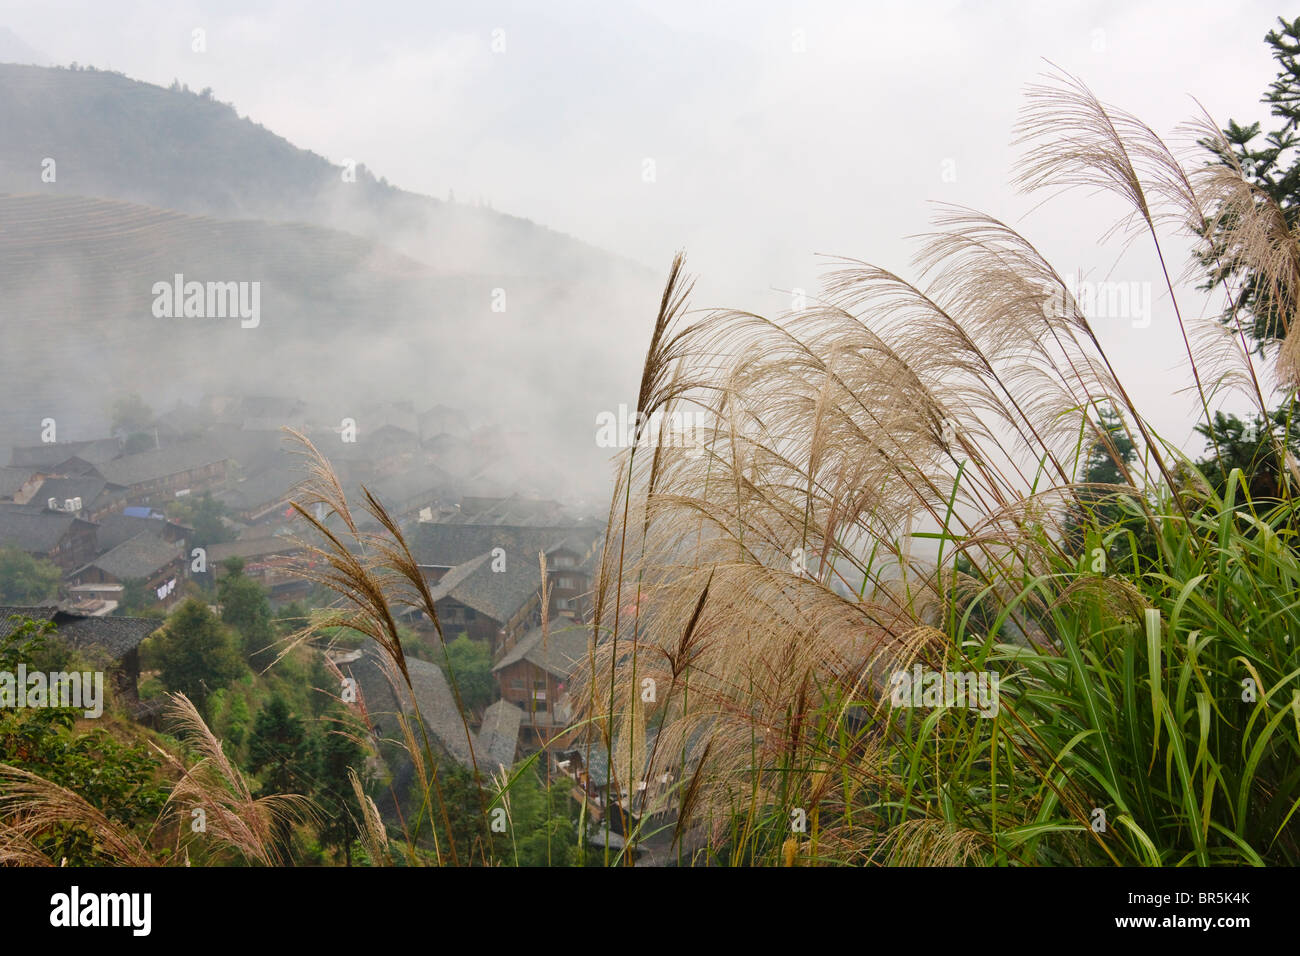 Case di villaggio in montagna nella nebbia, Longsheng, Guangxi, Cina Foto Stock